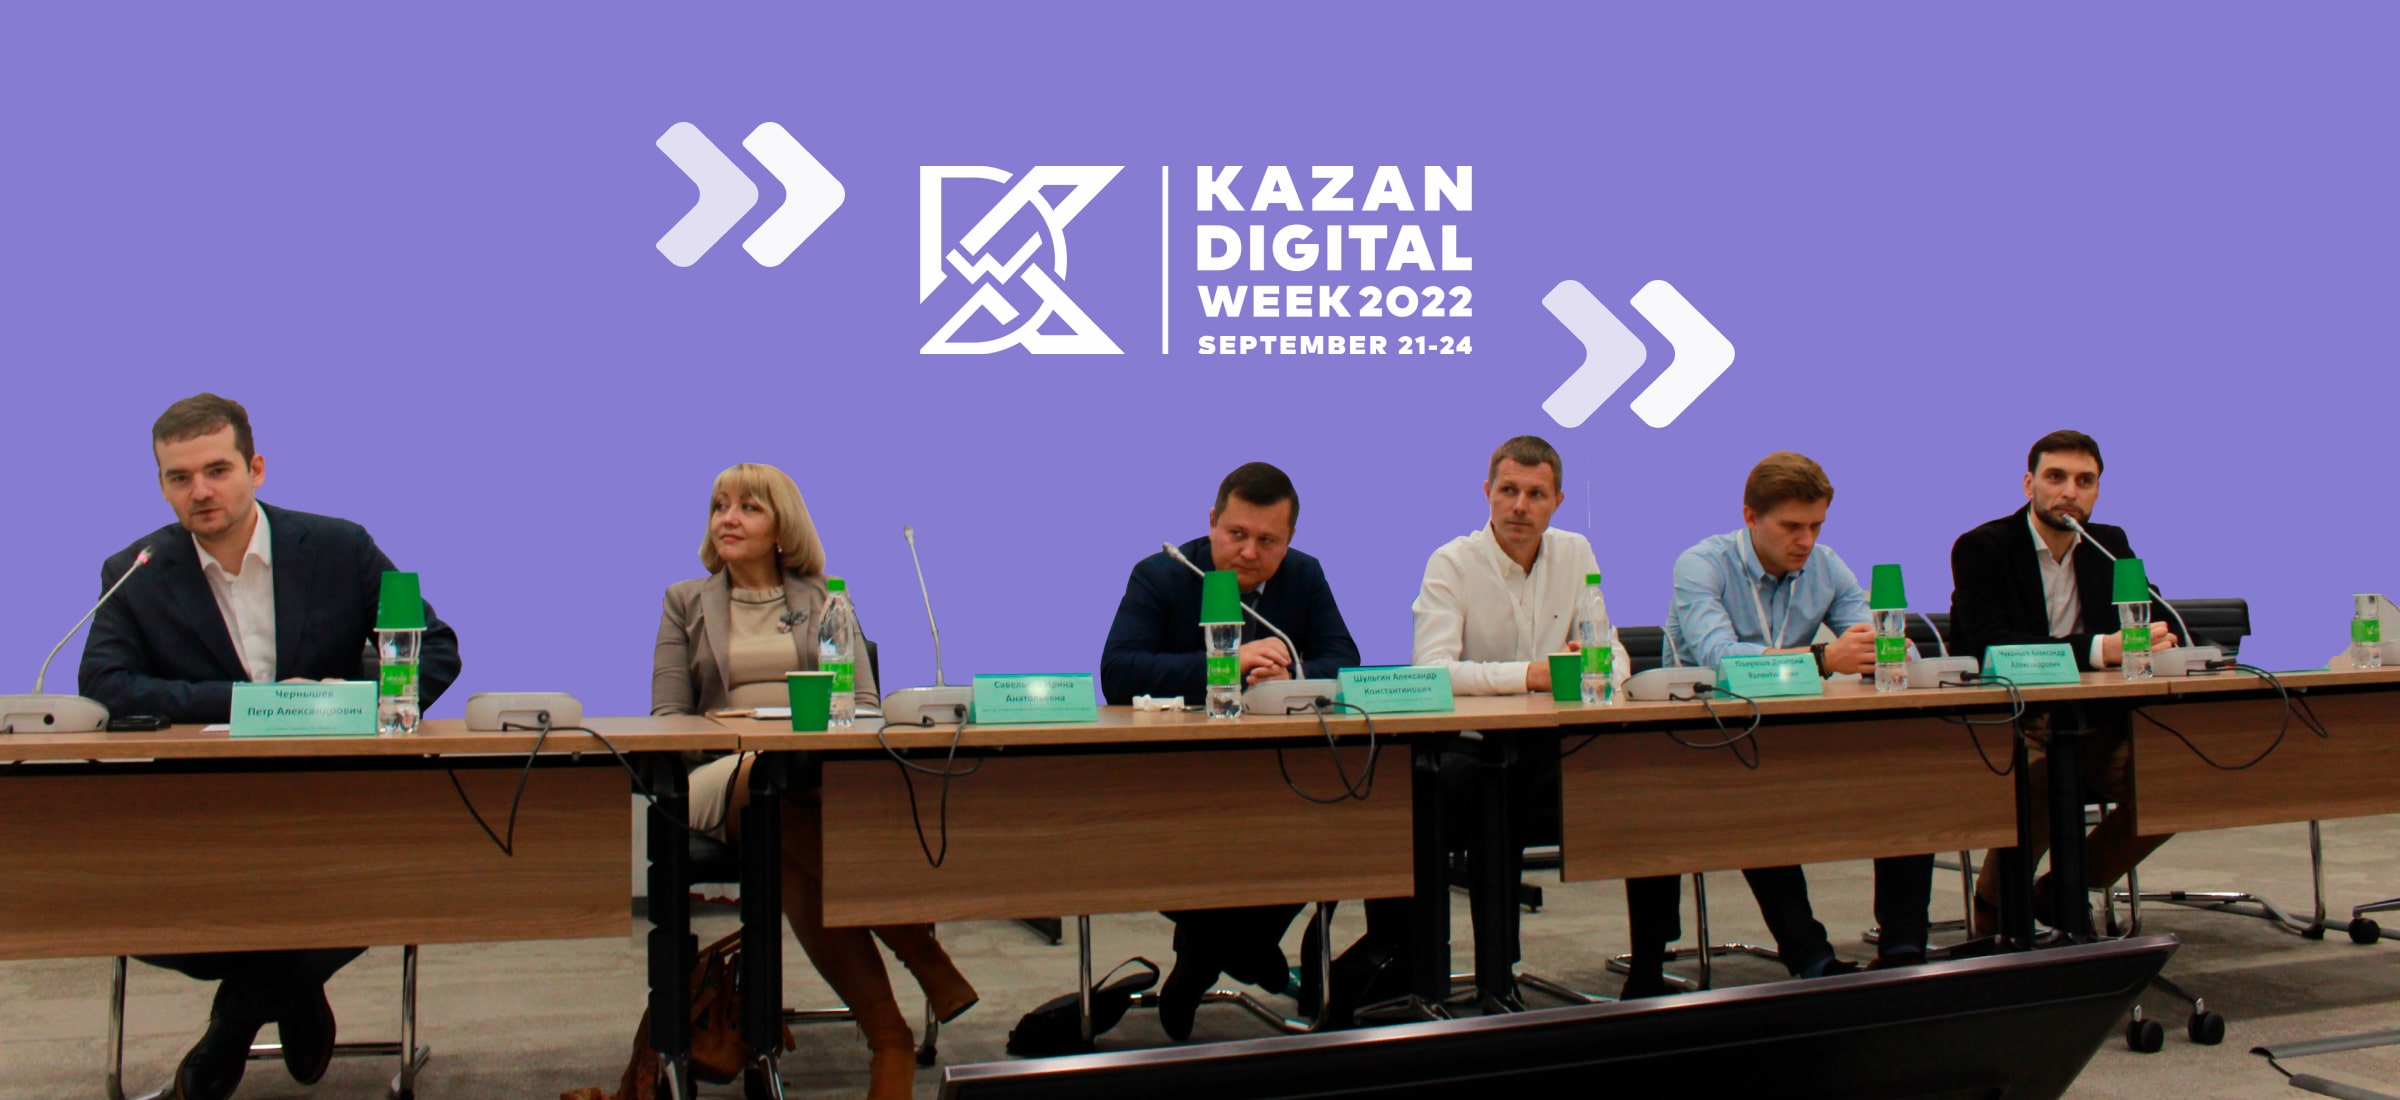 Группа компаний Friflex провела дискуссионную панель о ритейле на форуме Kazan Digital Week